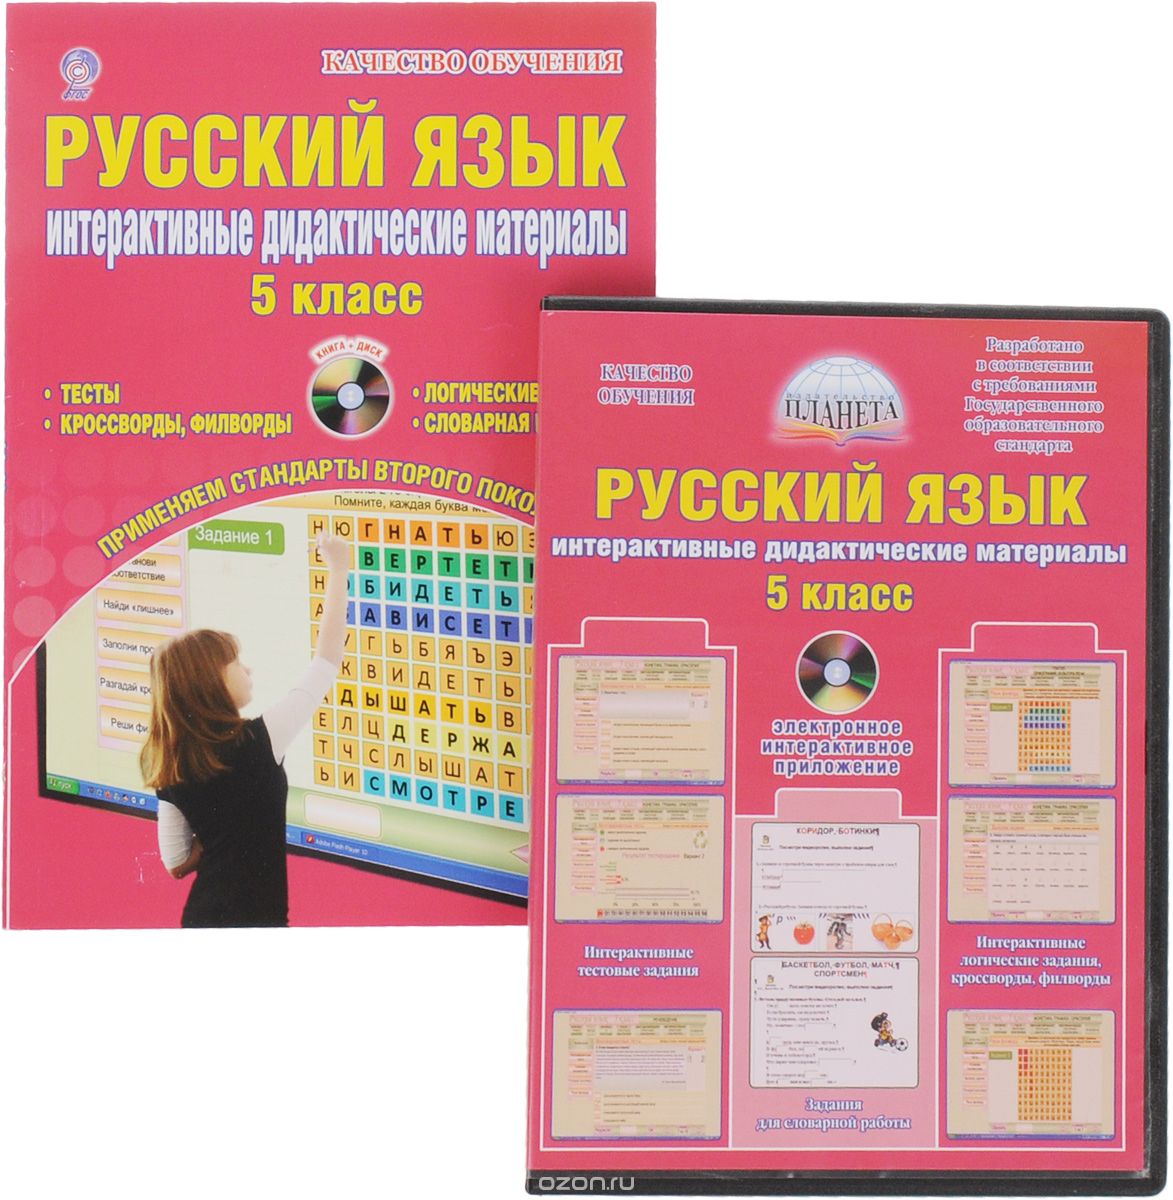 Скачать книгу "Русский язык. 5 класс. Интерактивные дидактические материалы (+ CD)"